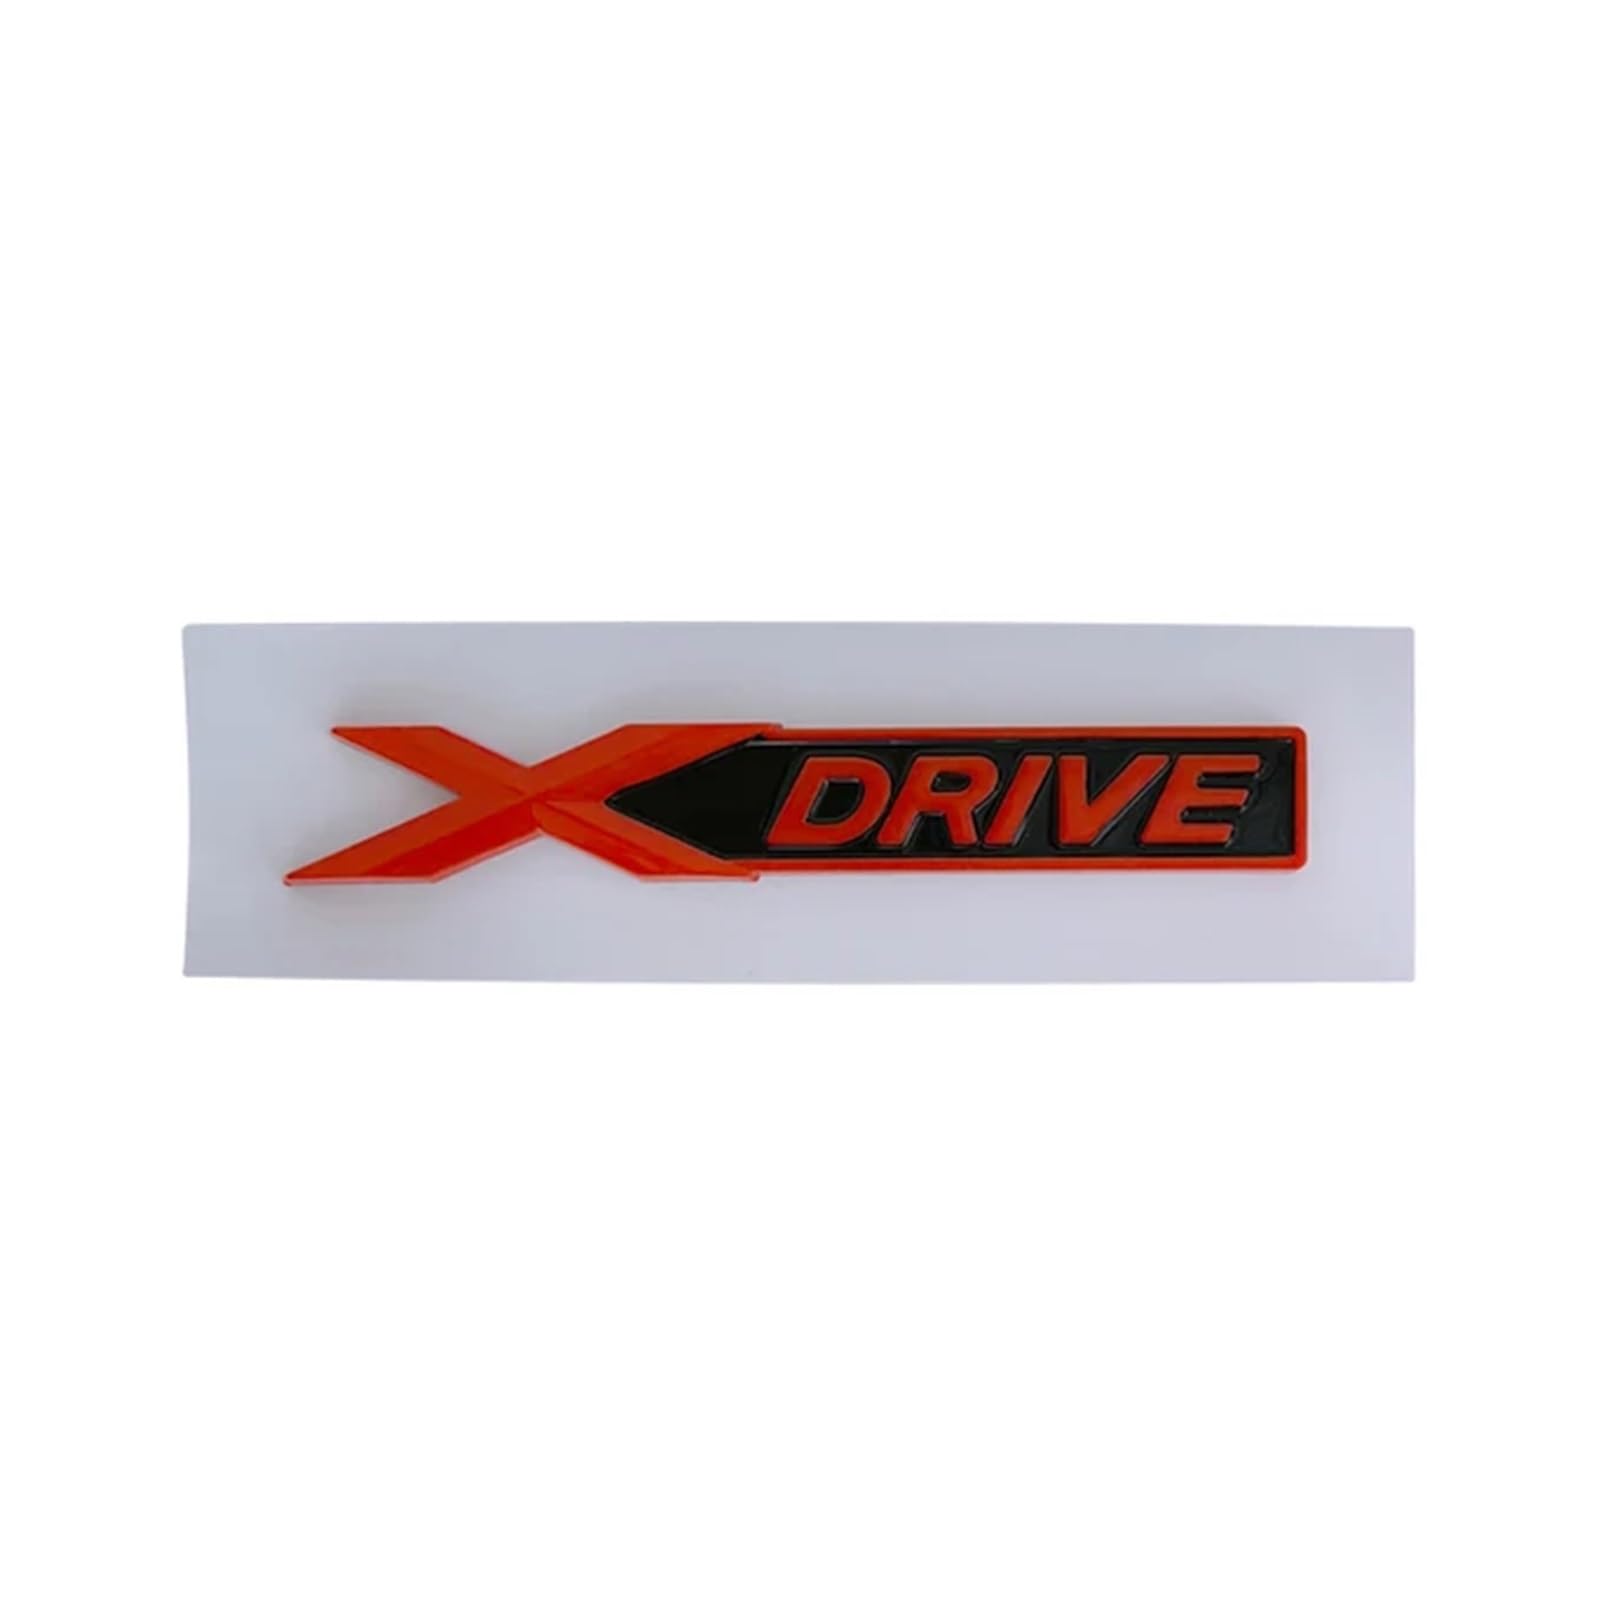 YSRWTBBA 3D-ABS-Chrom-Schwarz-Logo Xdrive-Emblem Auto-Kofferraum-Abzeichen Kompatibel mit 520d 530d F30 GT F34 E61 320i 320d Xdrive-Aufkleber-Zubehör, einfach abziehen und abzi von YSRWTBBA